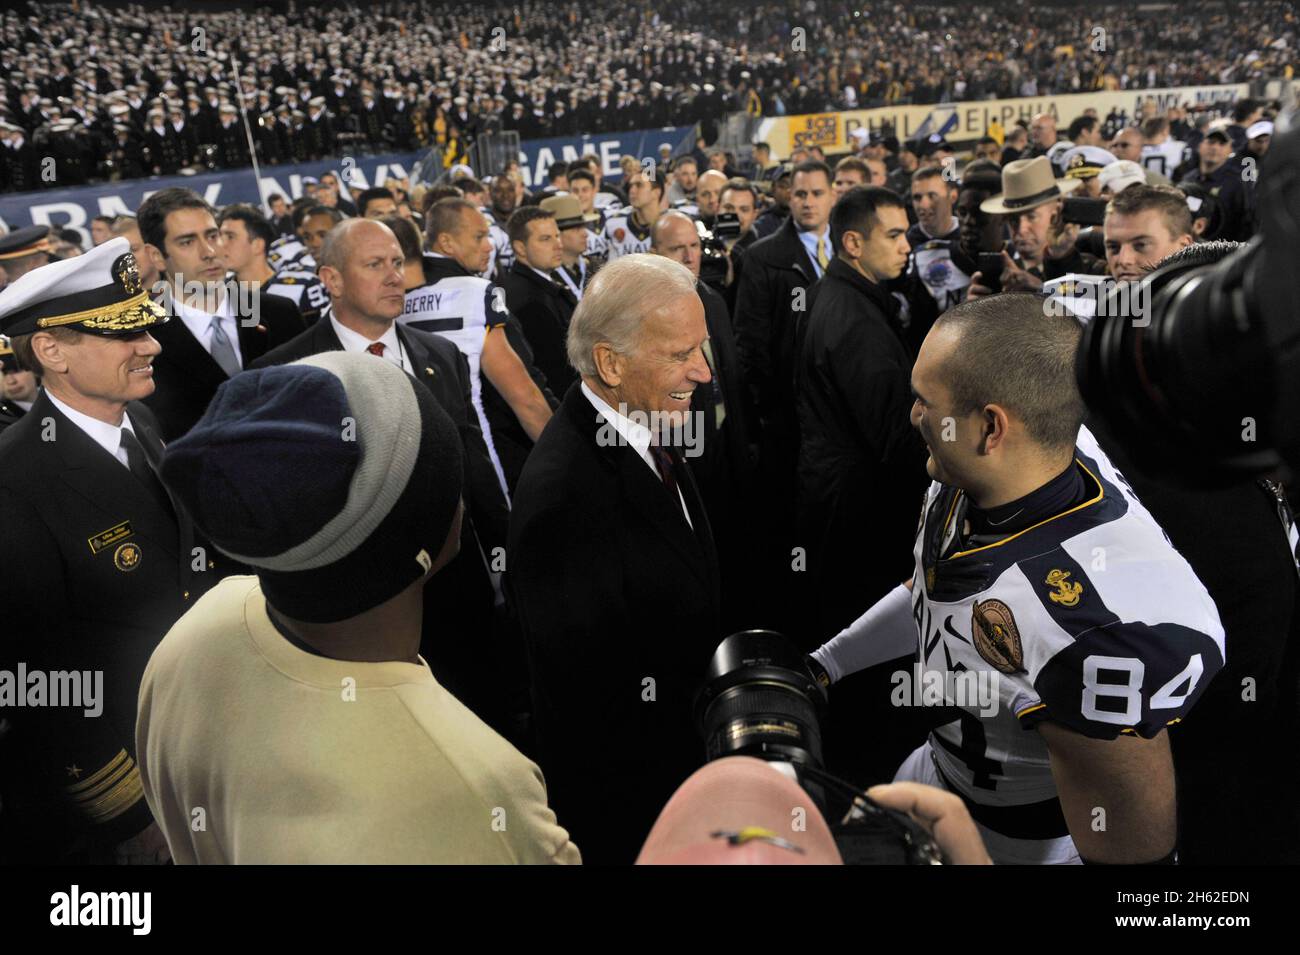 Le vice-président Joe Biden félicite les joueurs de football de la Marine sur le terrain après que la Marine a battu Army 17 à 13 au Lincoln Financial Field le 8 décembre 2012.8 décembre 2012. Banque D'Images